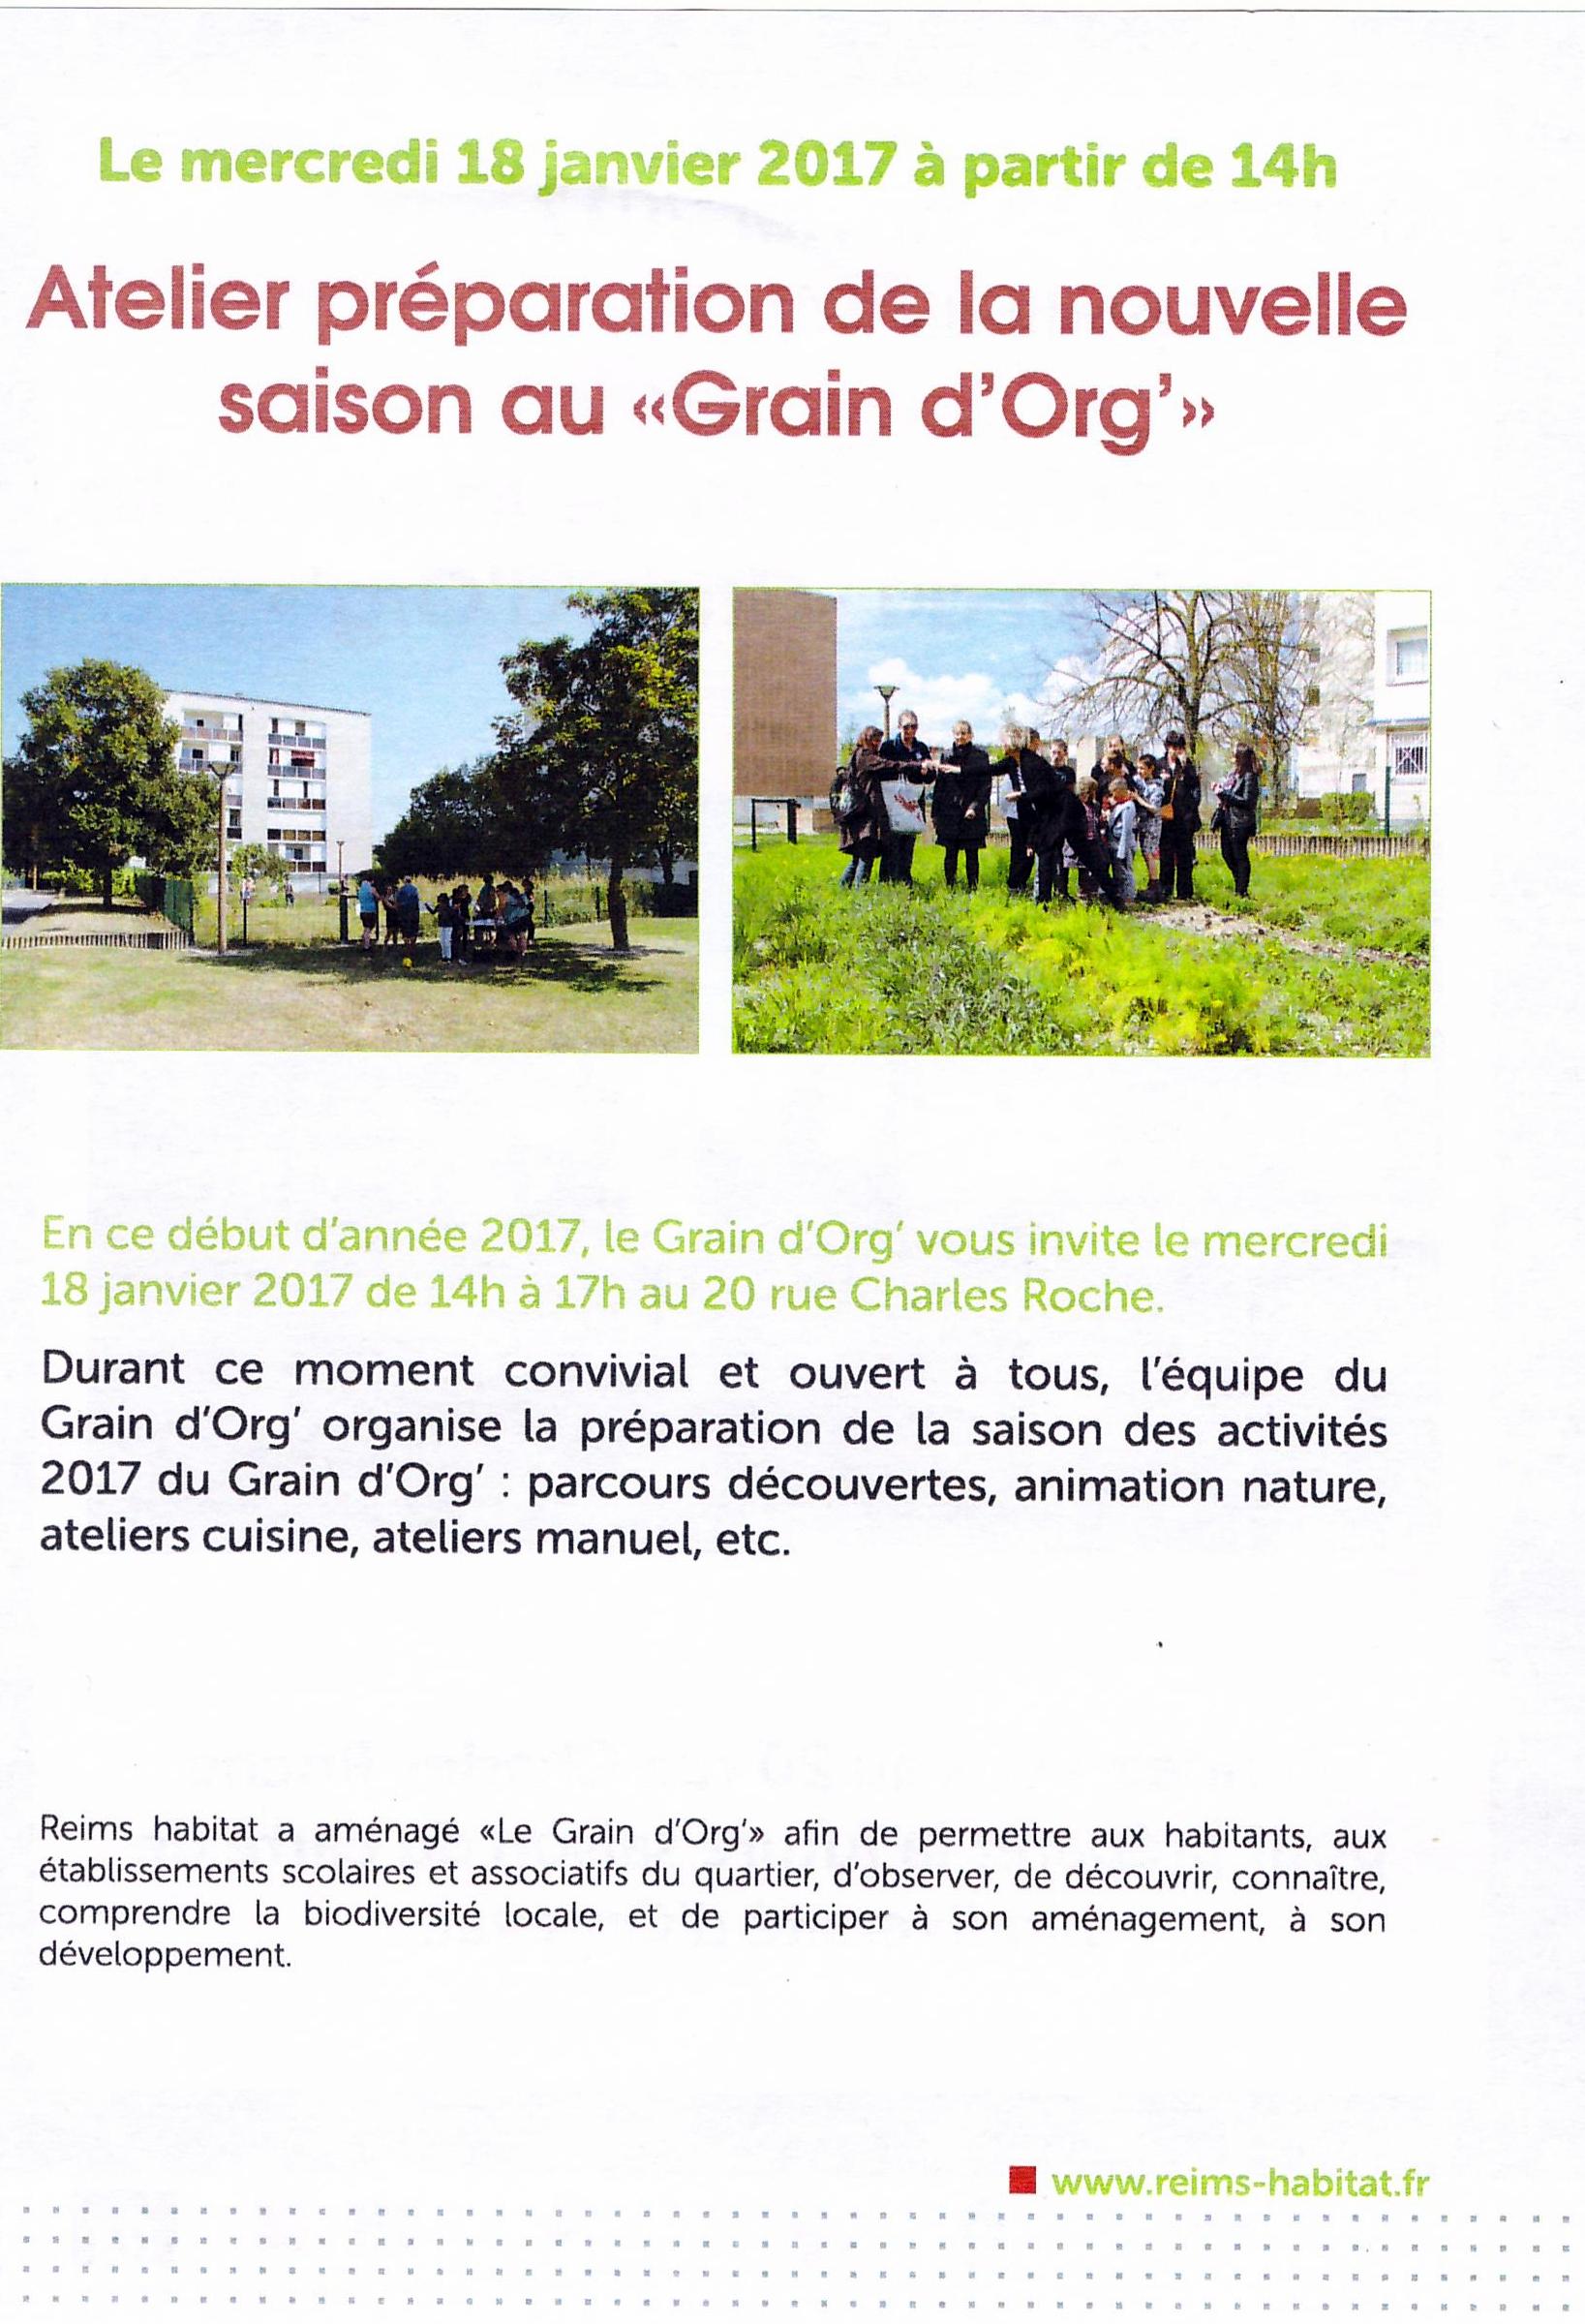 grain orge 1801 2